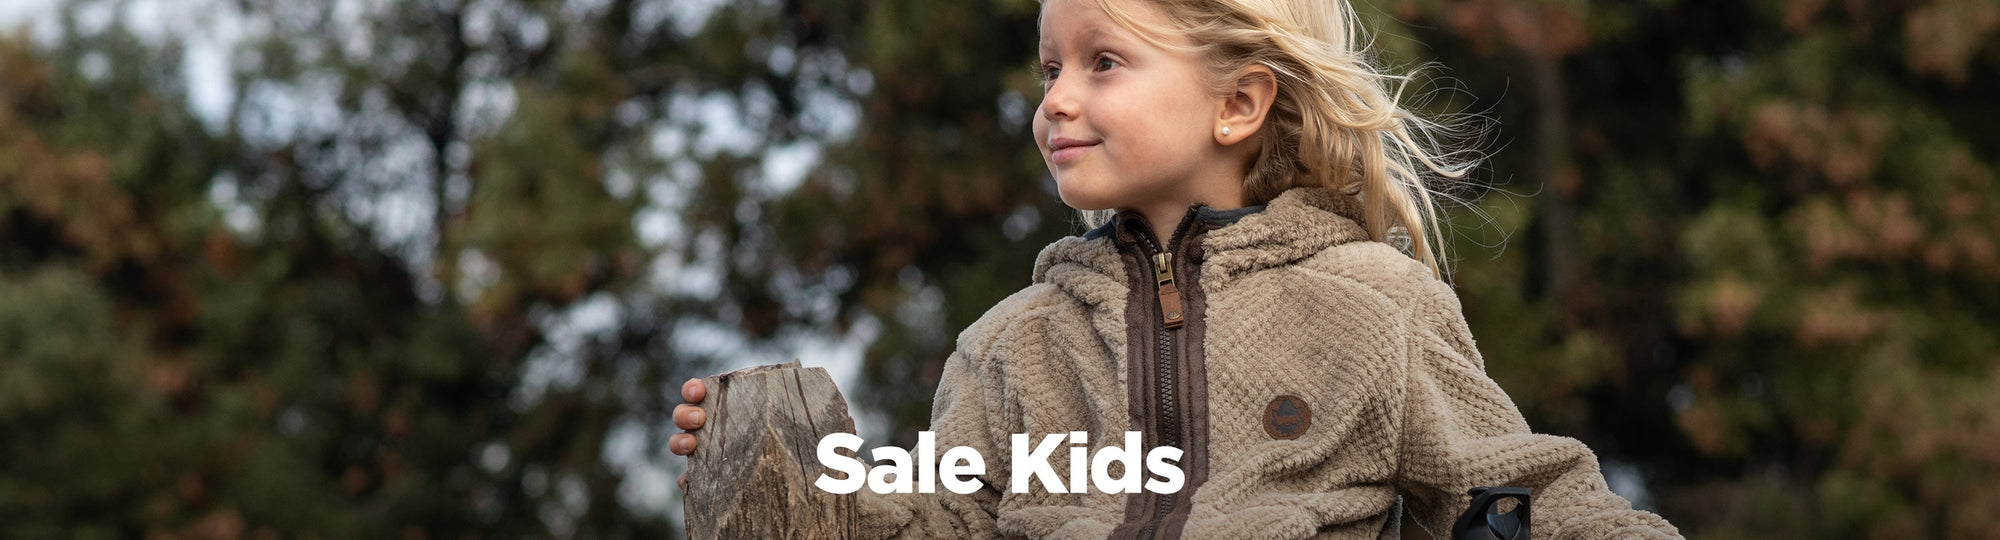 Sale Kids